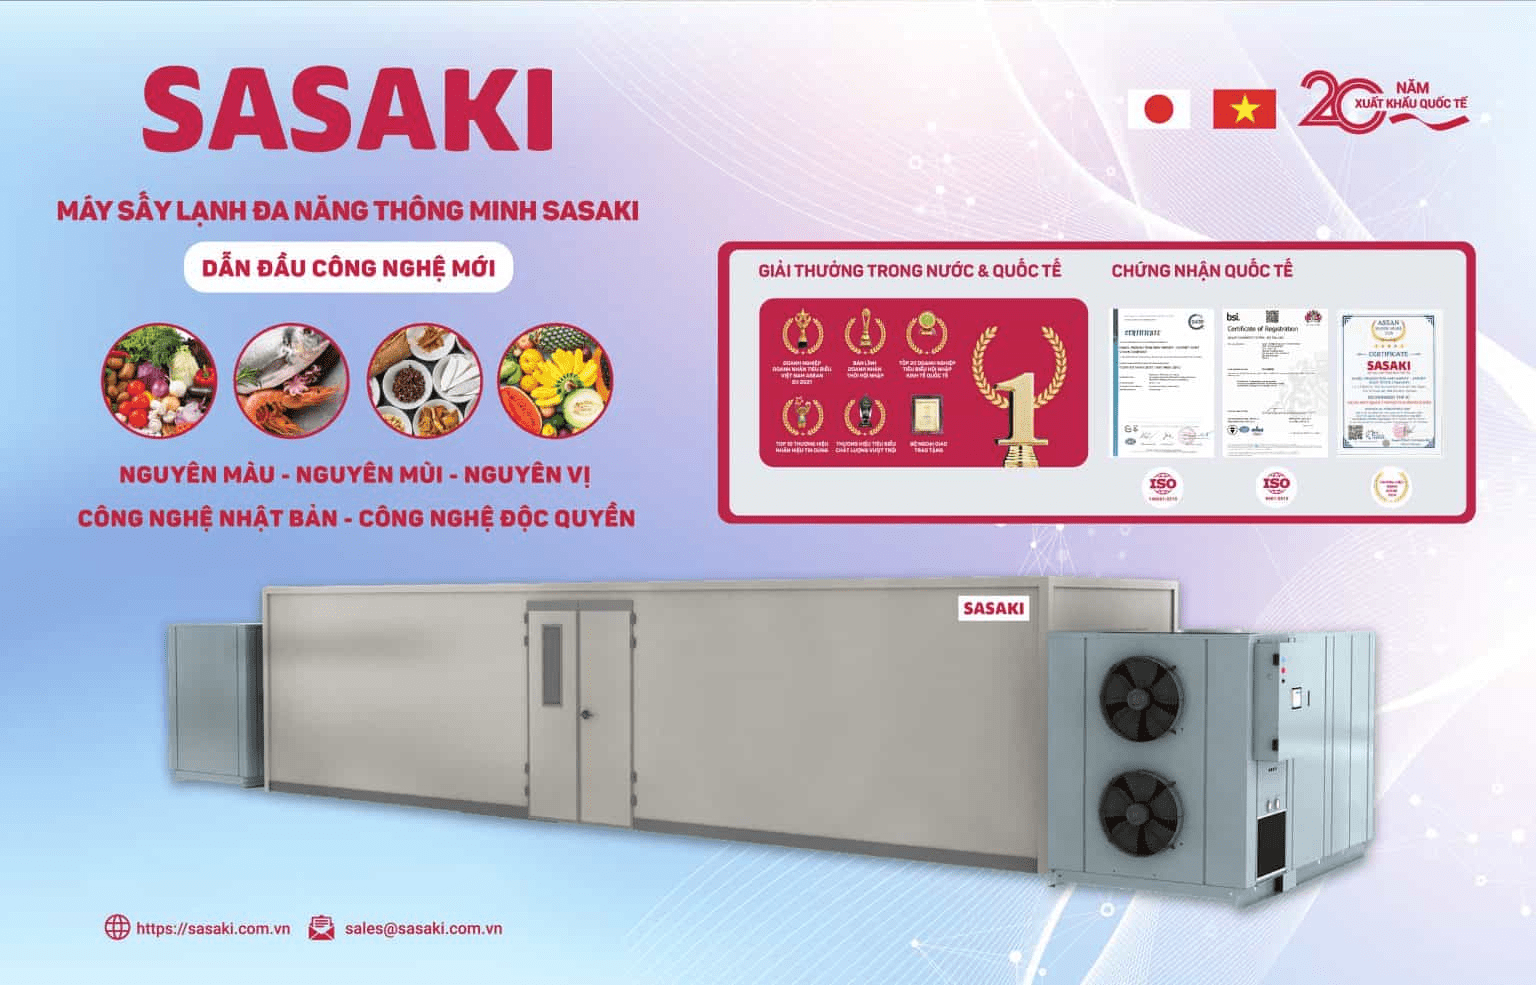 SASAKI là công nghệ tiên phong trong chuyển đổi số nhờ hệ thống quản trị thông minh